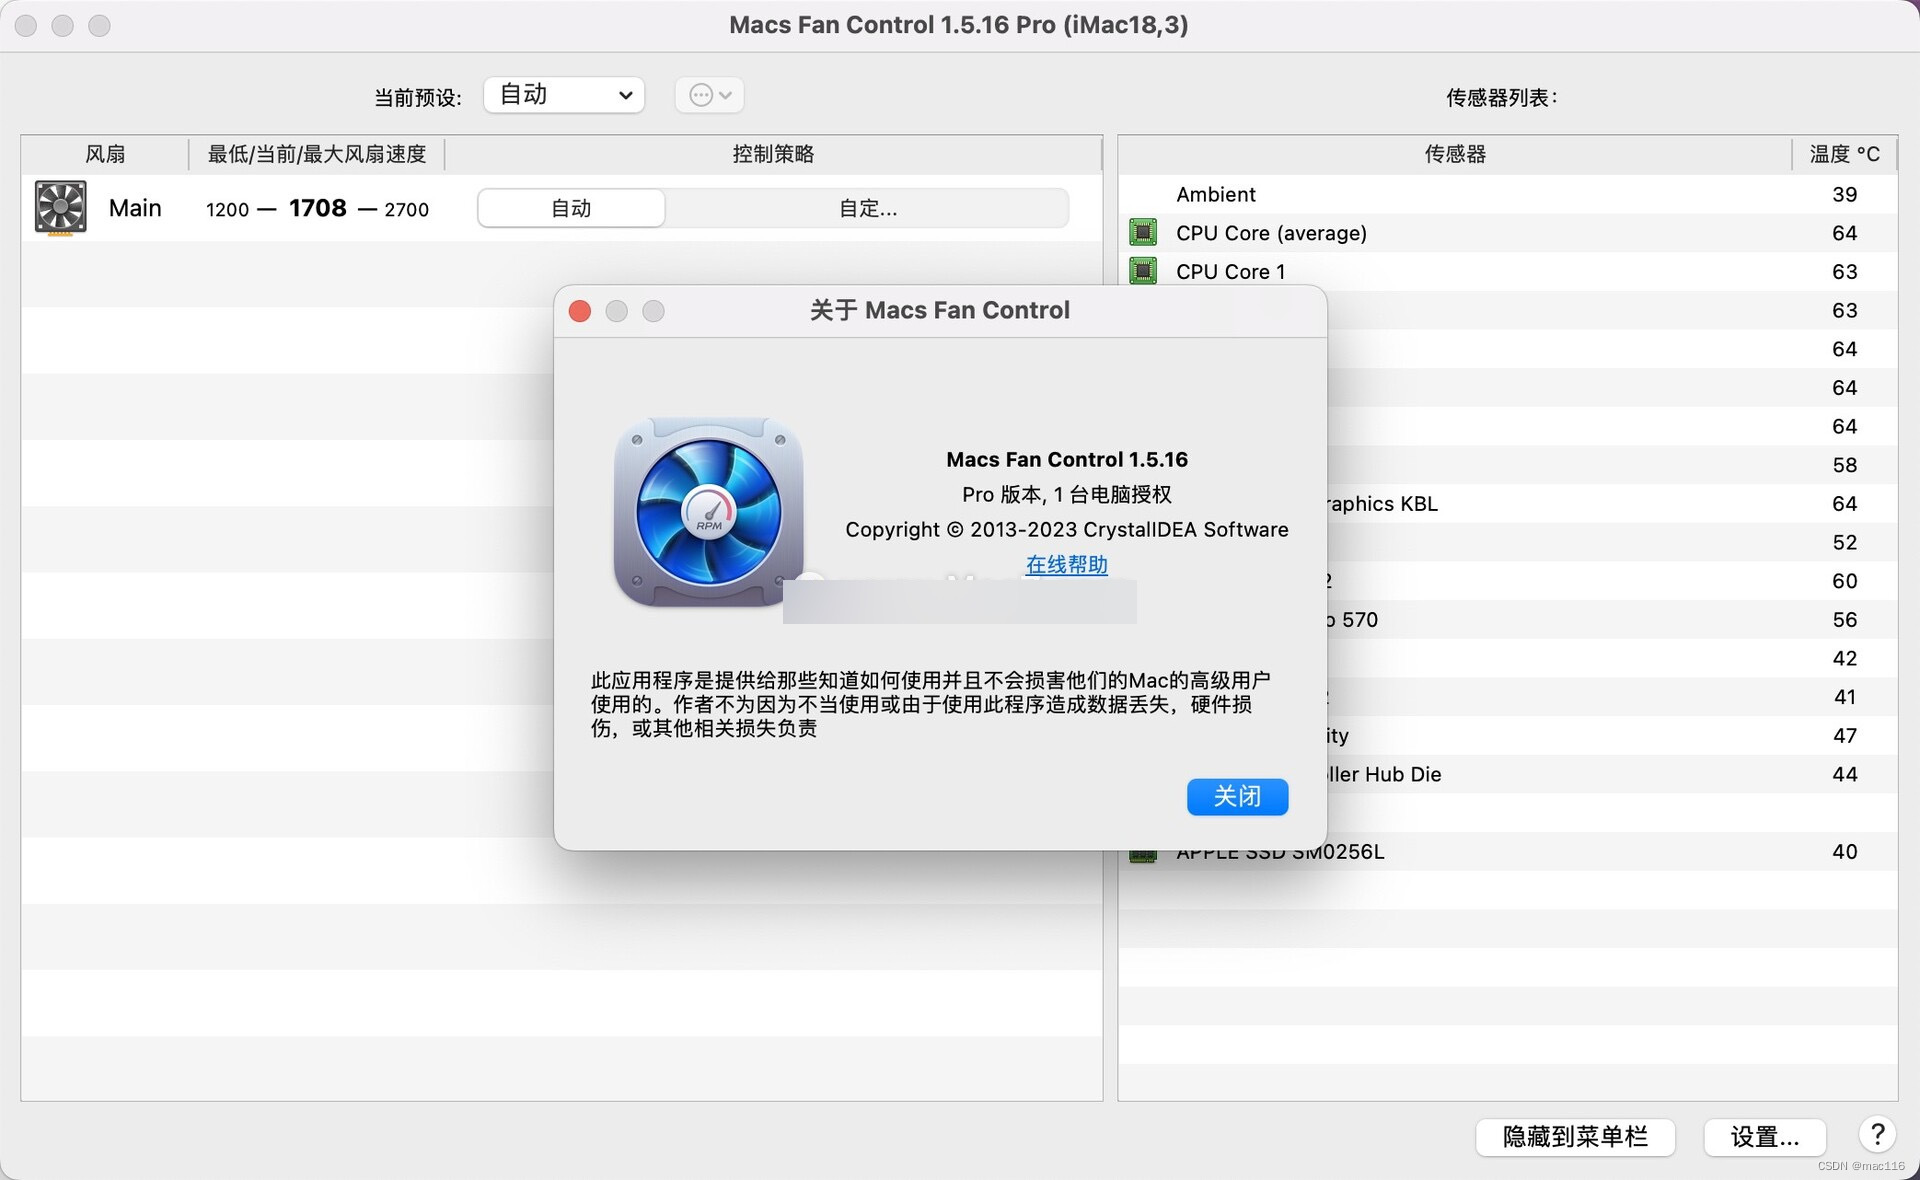 电脑风扇控制软件 Macs Fan Control Pro mac中文版功能介绍